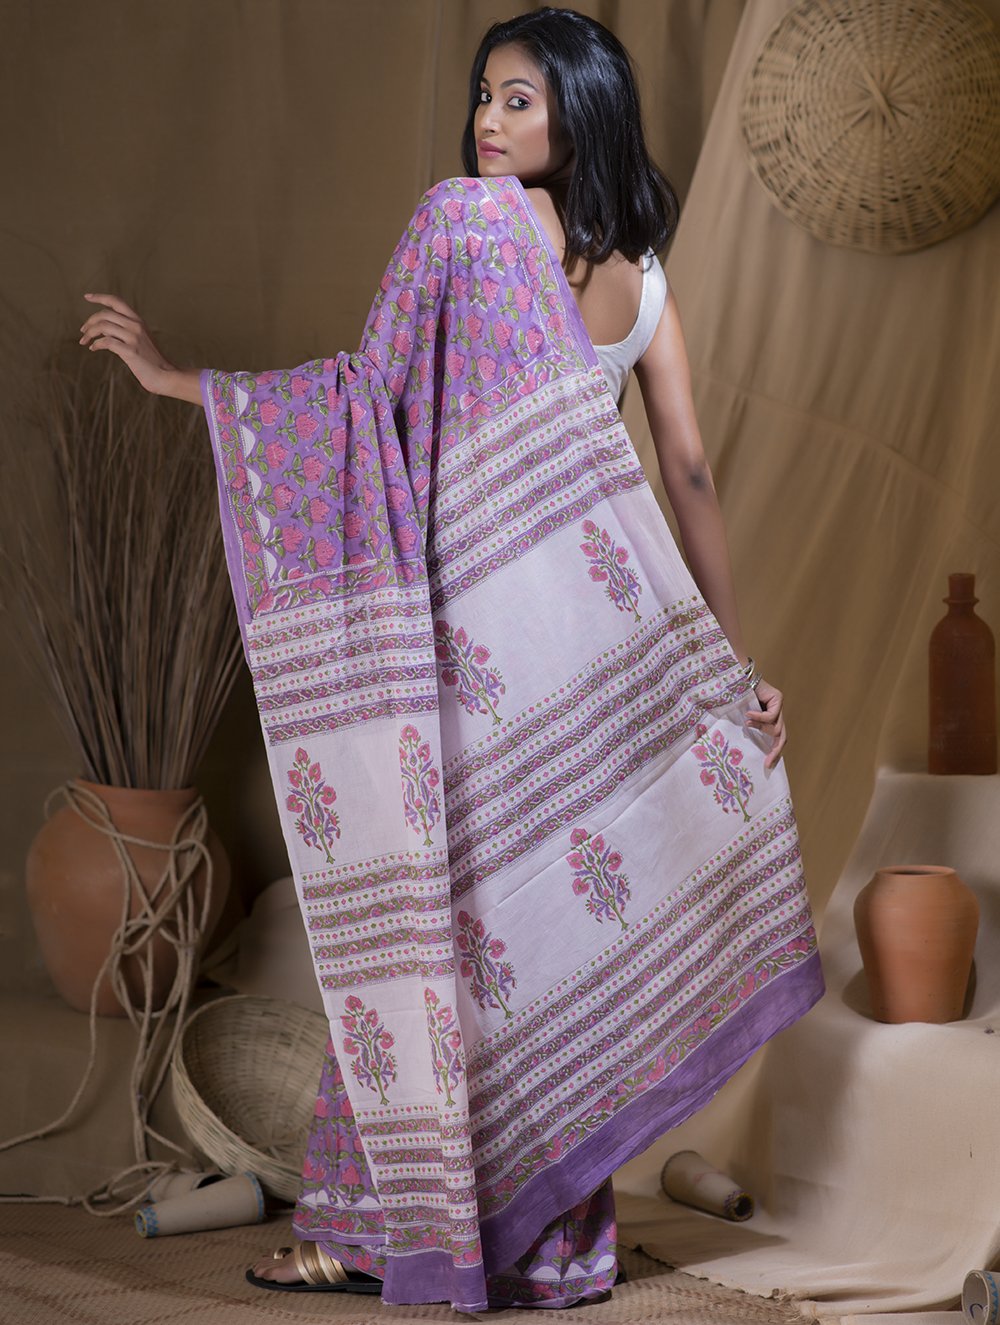 Load image into Gallery viewer, Bagru Sanganeri Block Printed Cotton Saree - Lavender, Pink &amp; White